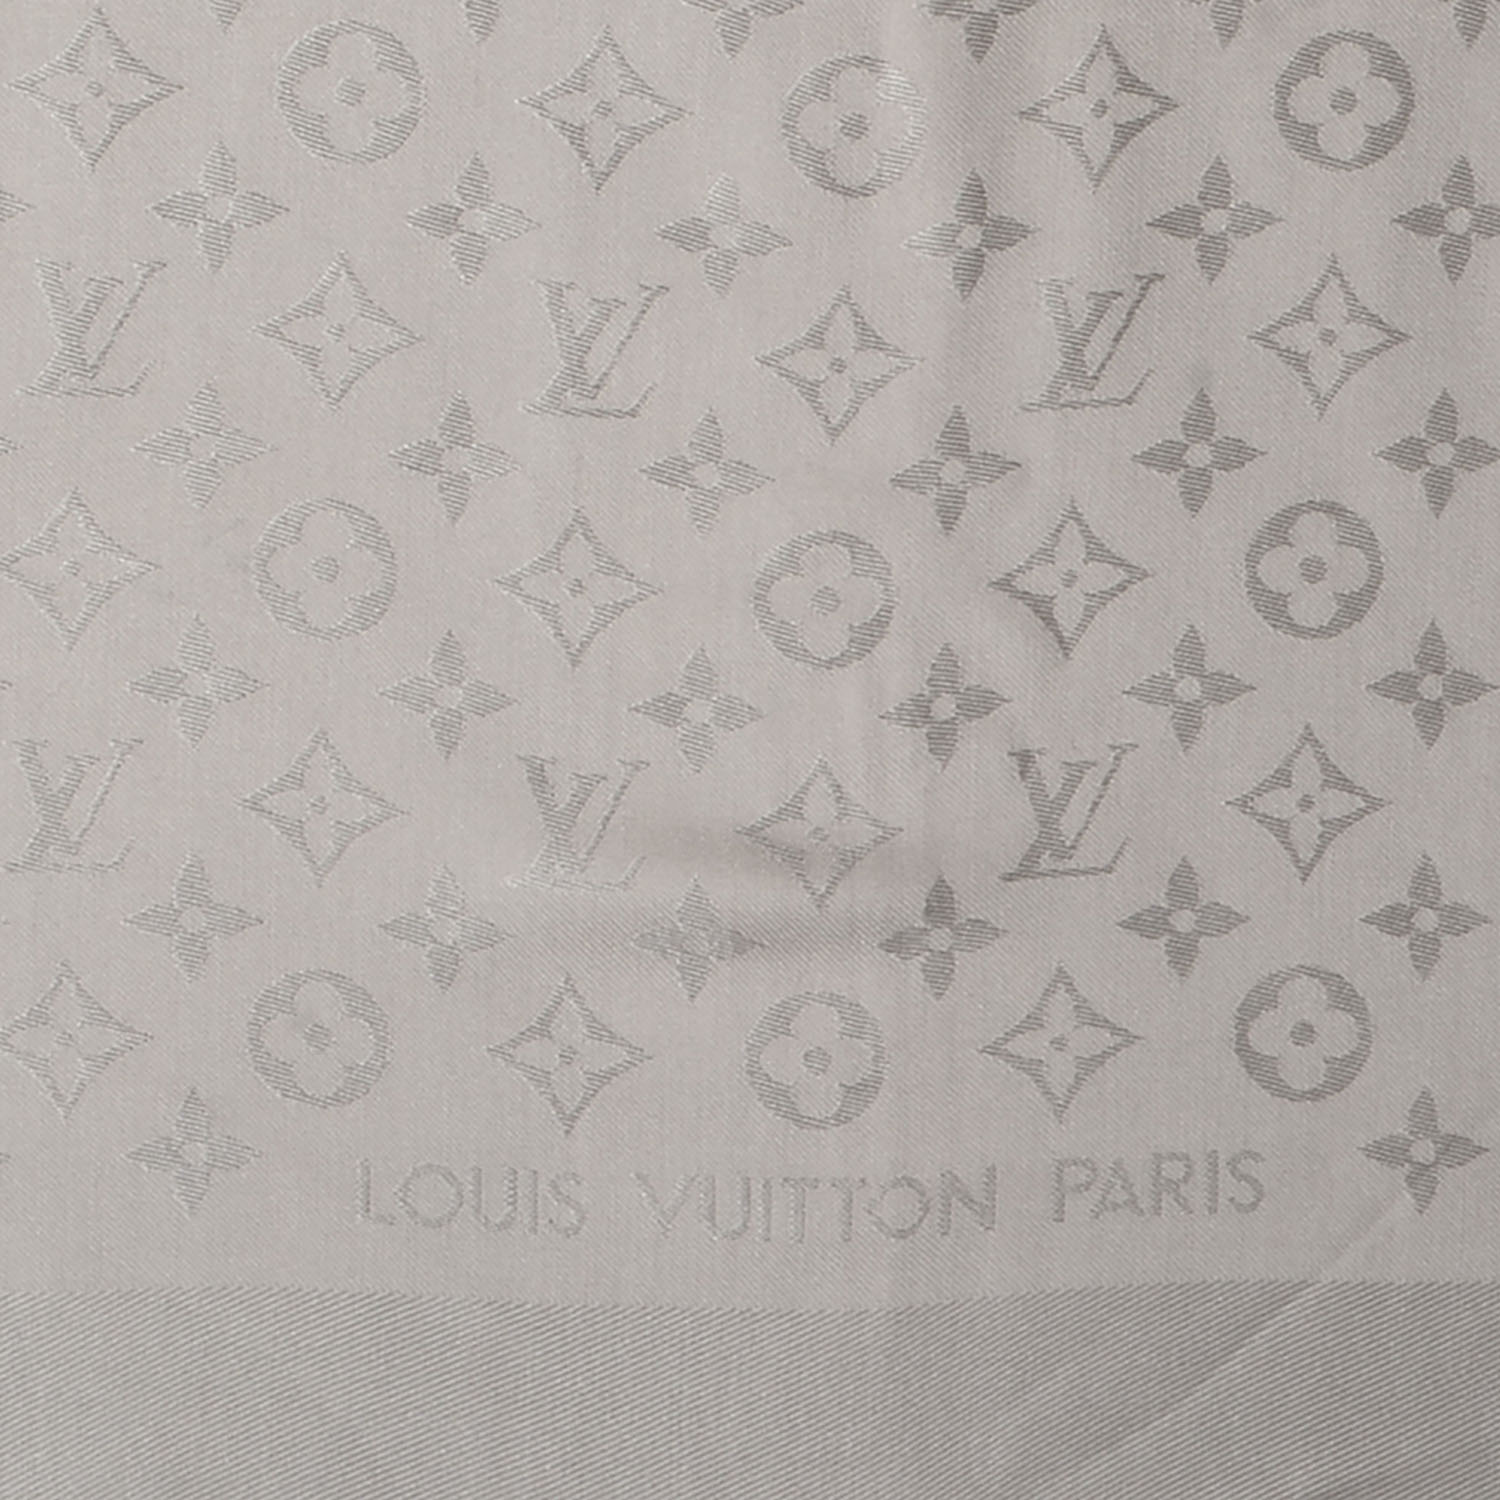 LOUIS VUITTON Silk Wool Monogram Shawl Beige 67817